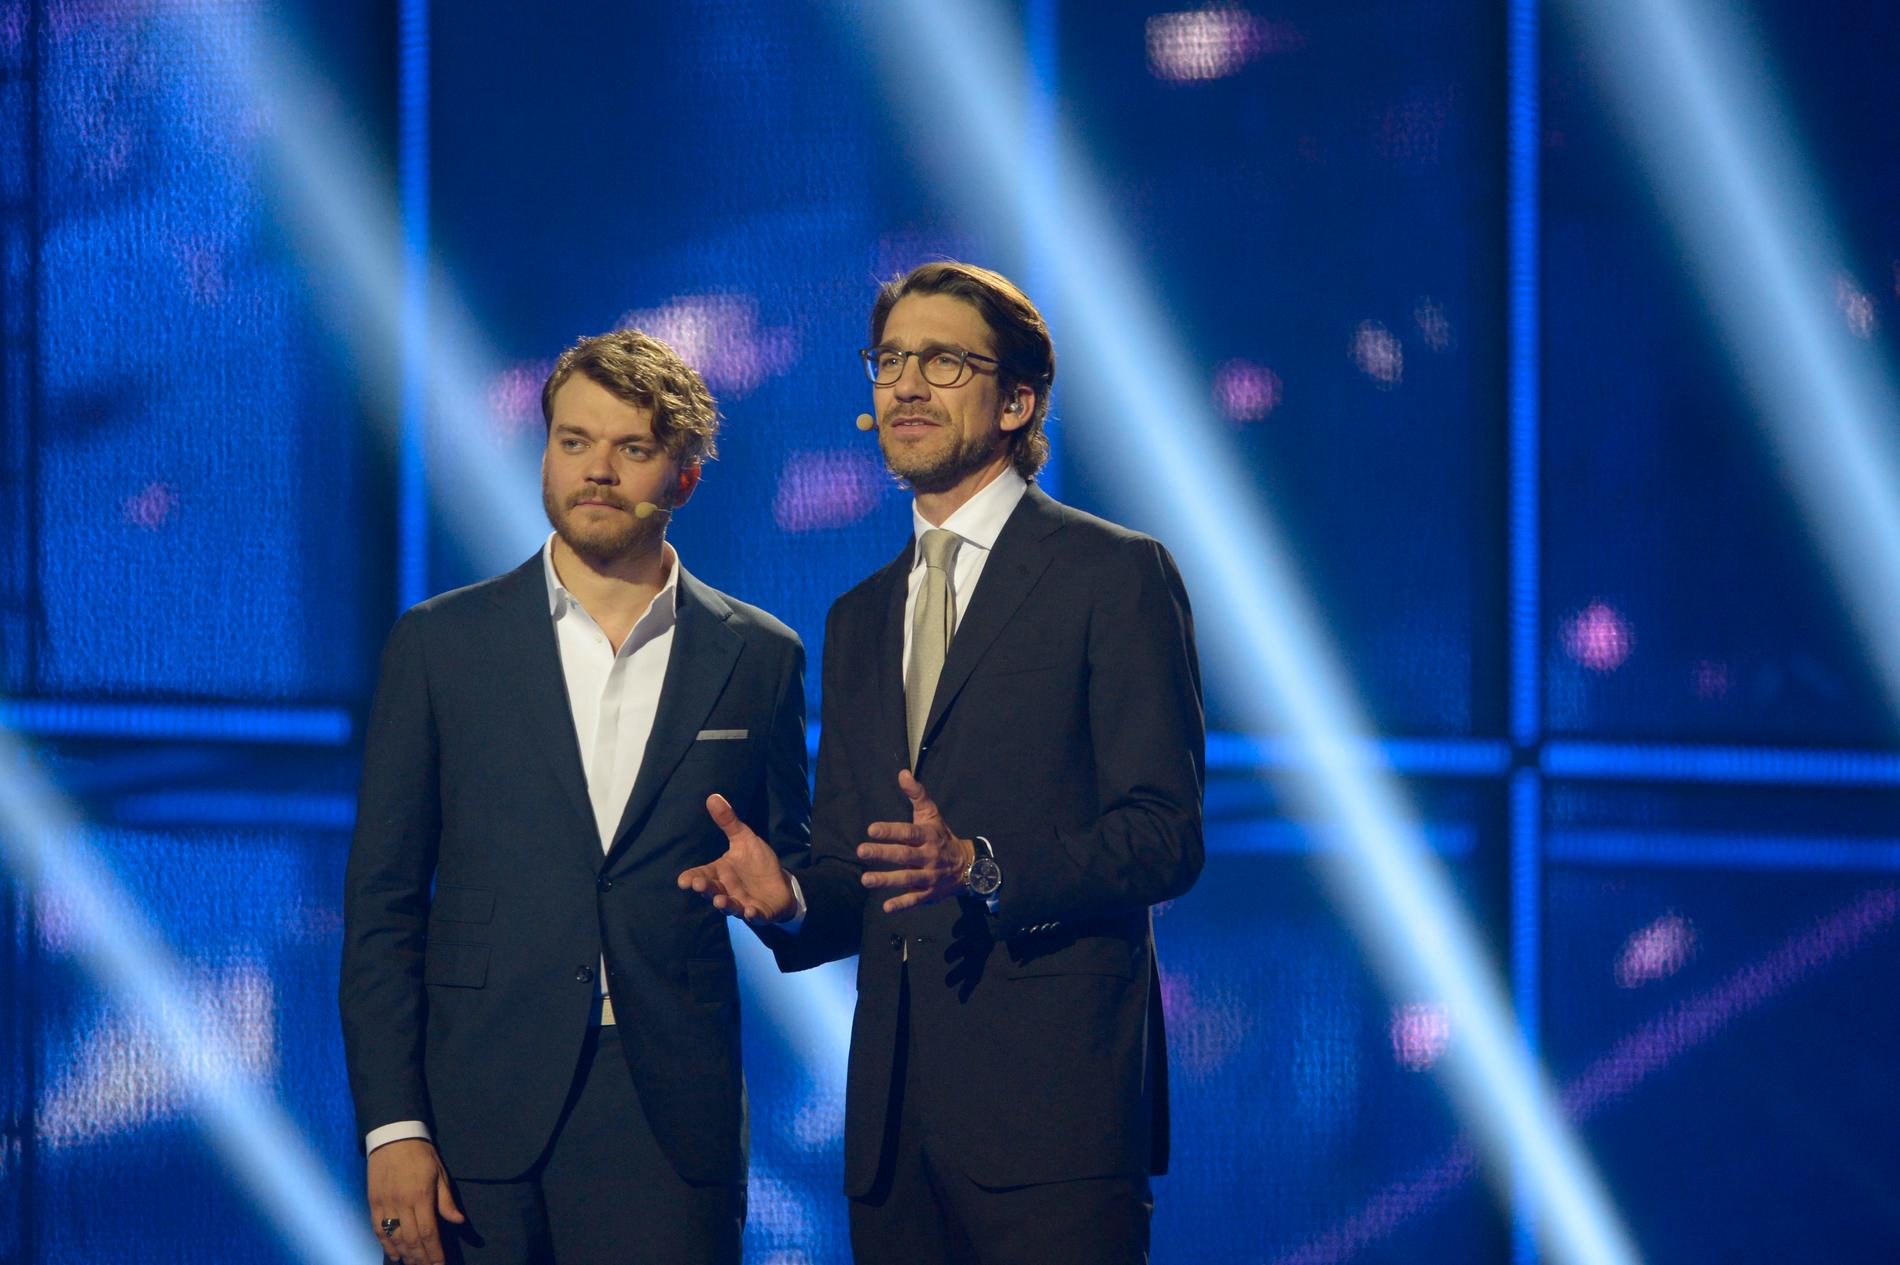 2014 var Pilou Asbæk en programledarna för Eurovision Song Contest i Köpenhamn.